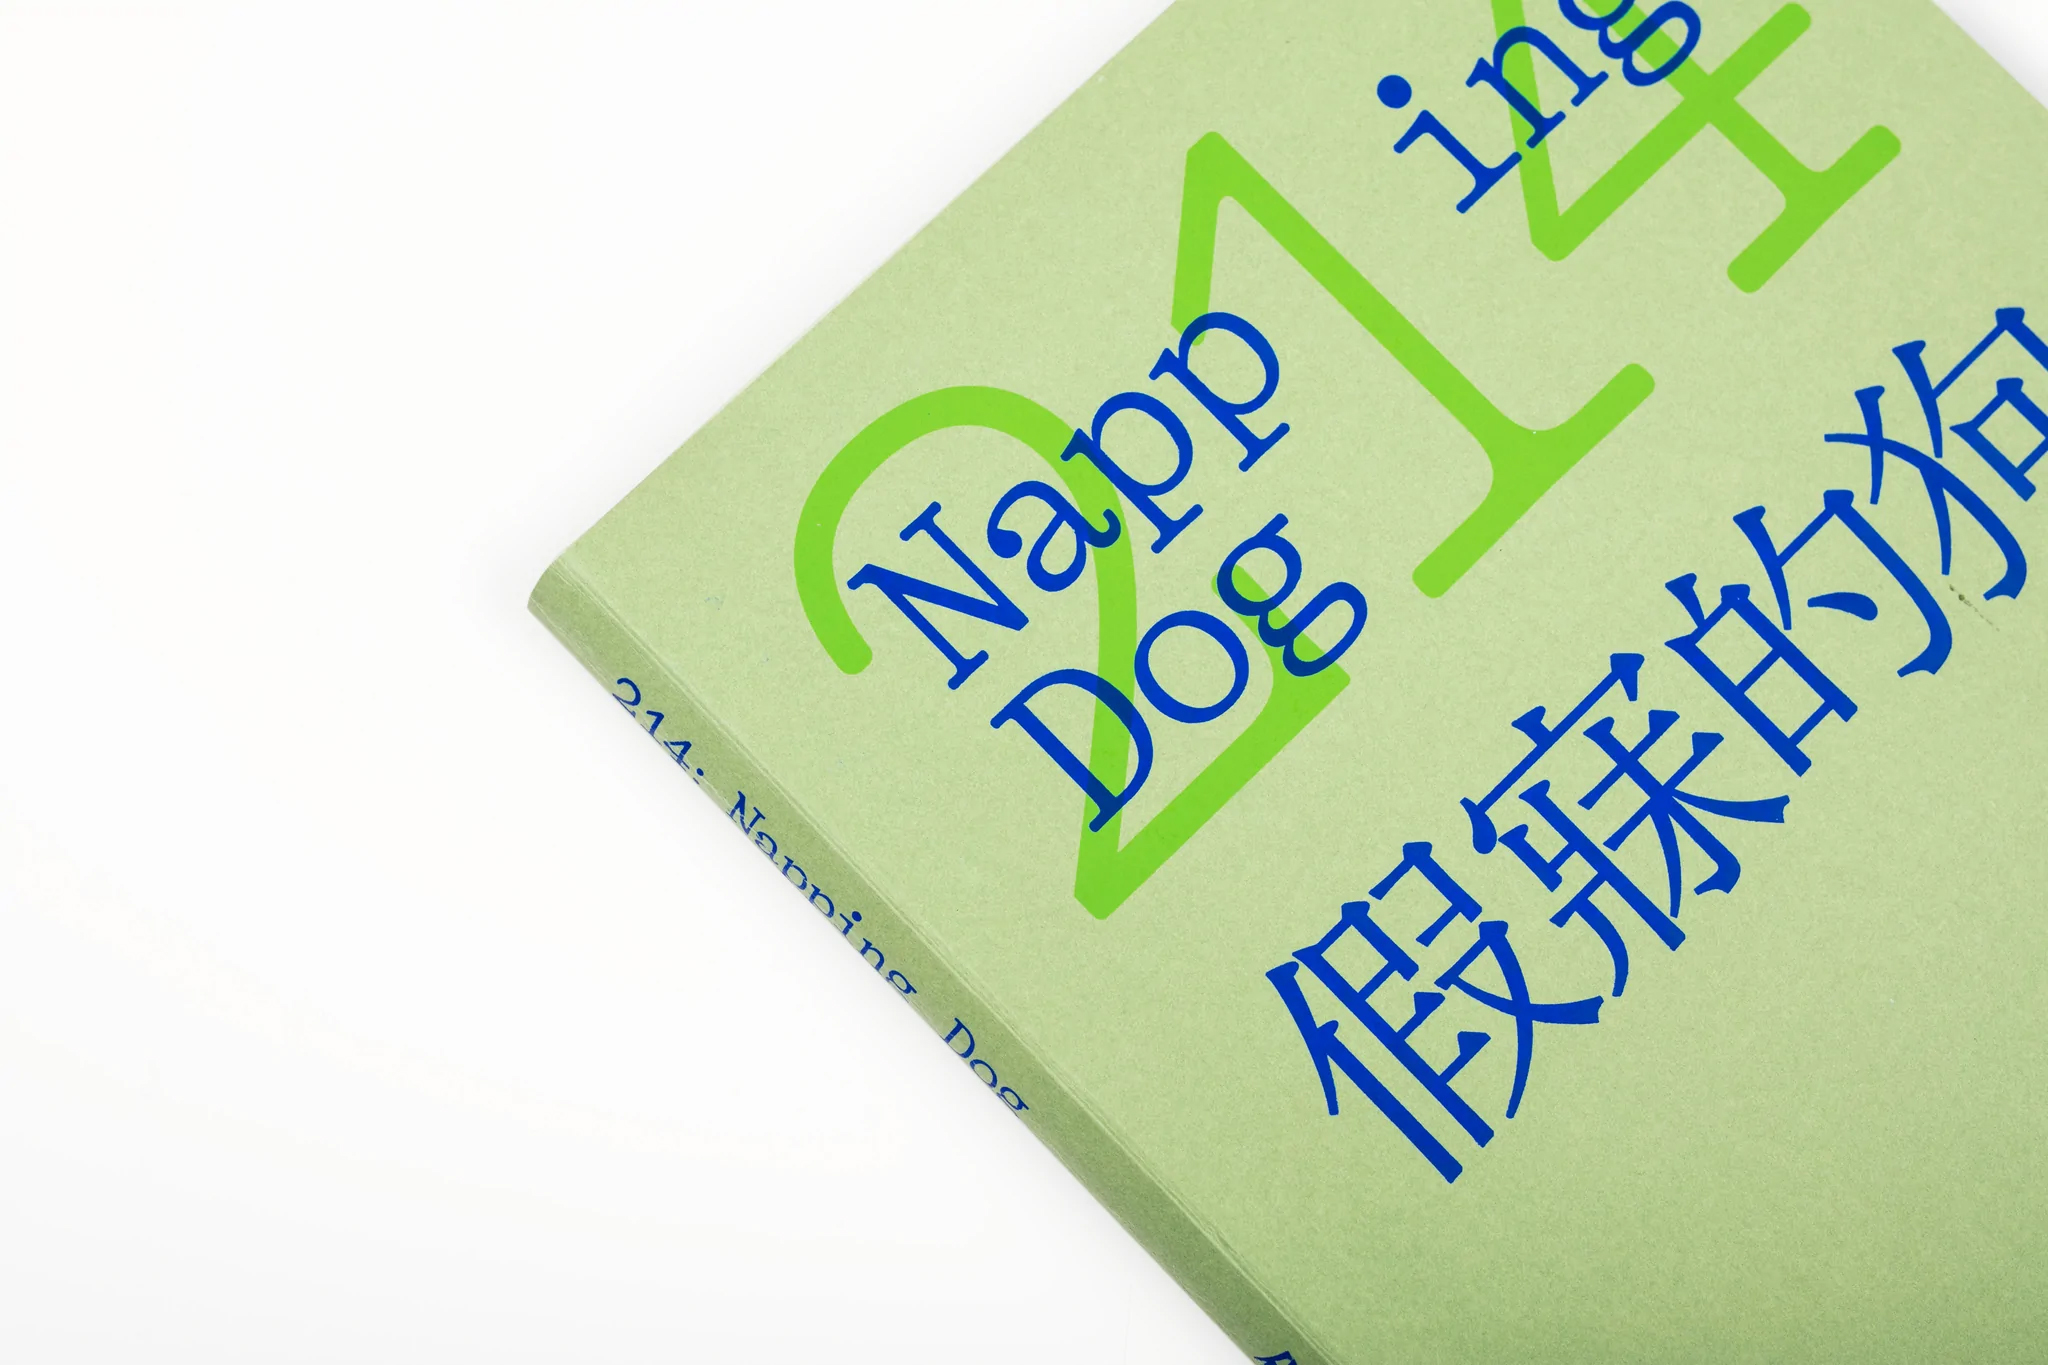 nappingdog  25 nappingdog 024xnappingdog 024 2x copie - 214 - Napping Dog - BOOK |  - Napping Dog